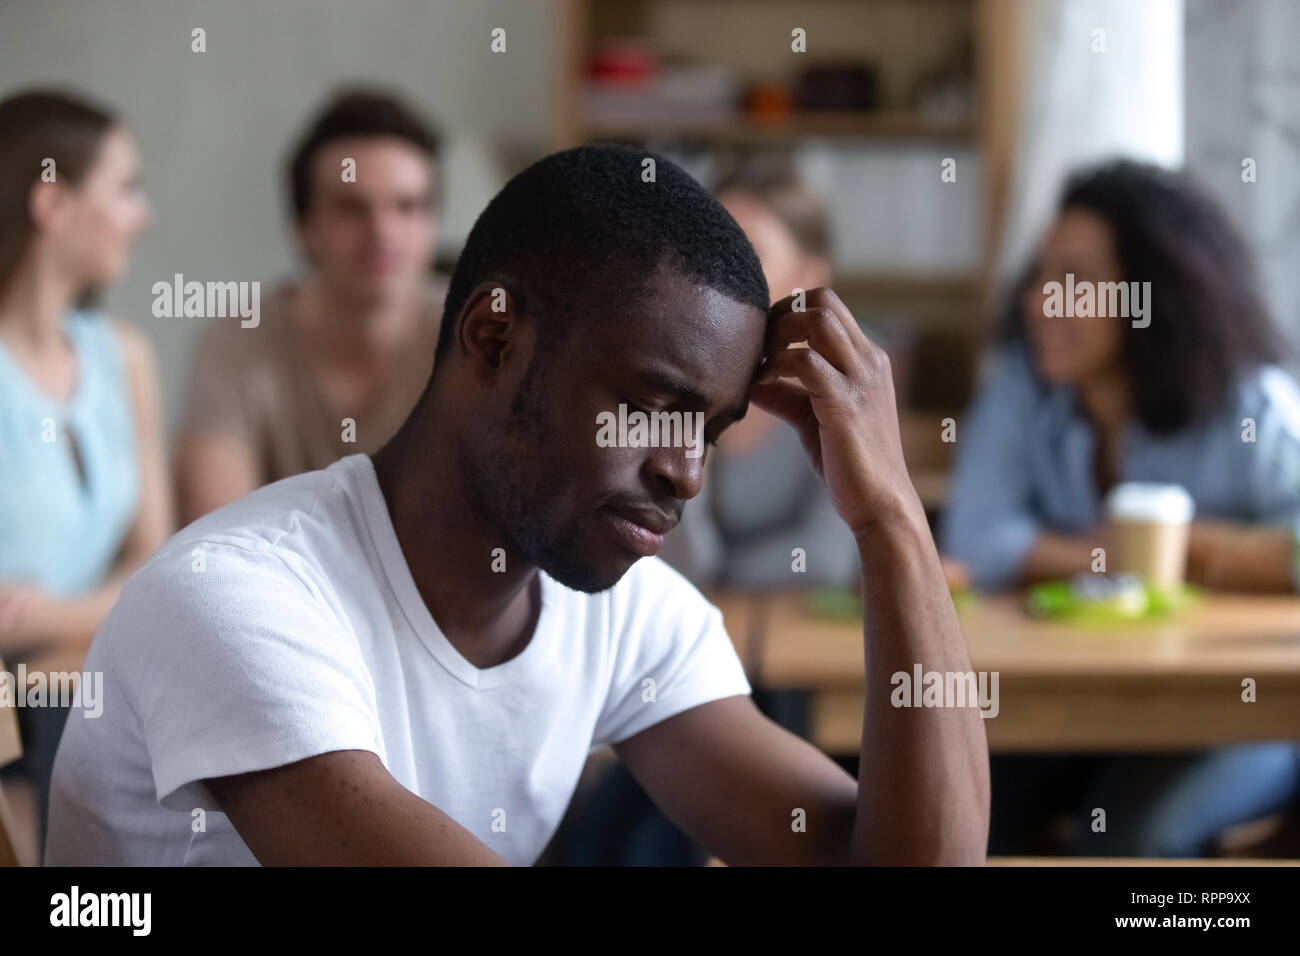 Triste americano africano l uomo che soffre di bullismo o discriminazione razziale Foto Stock